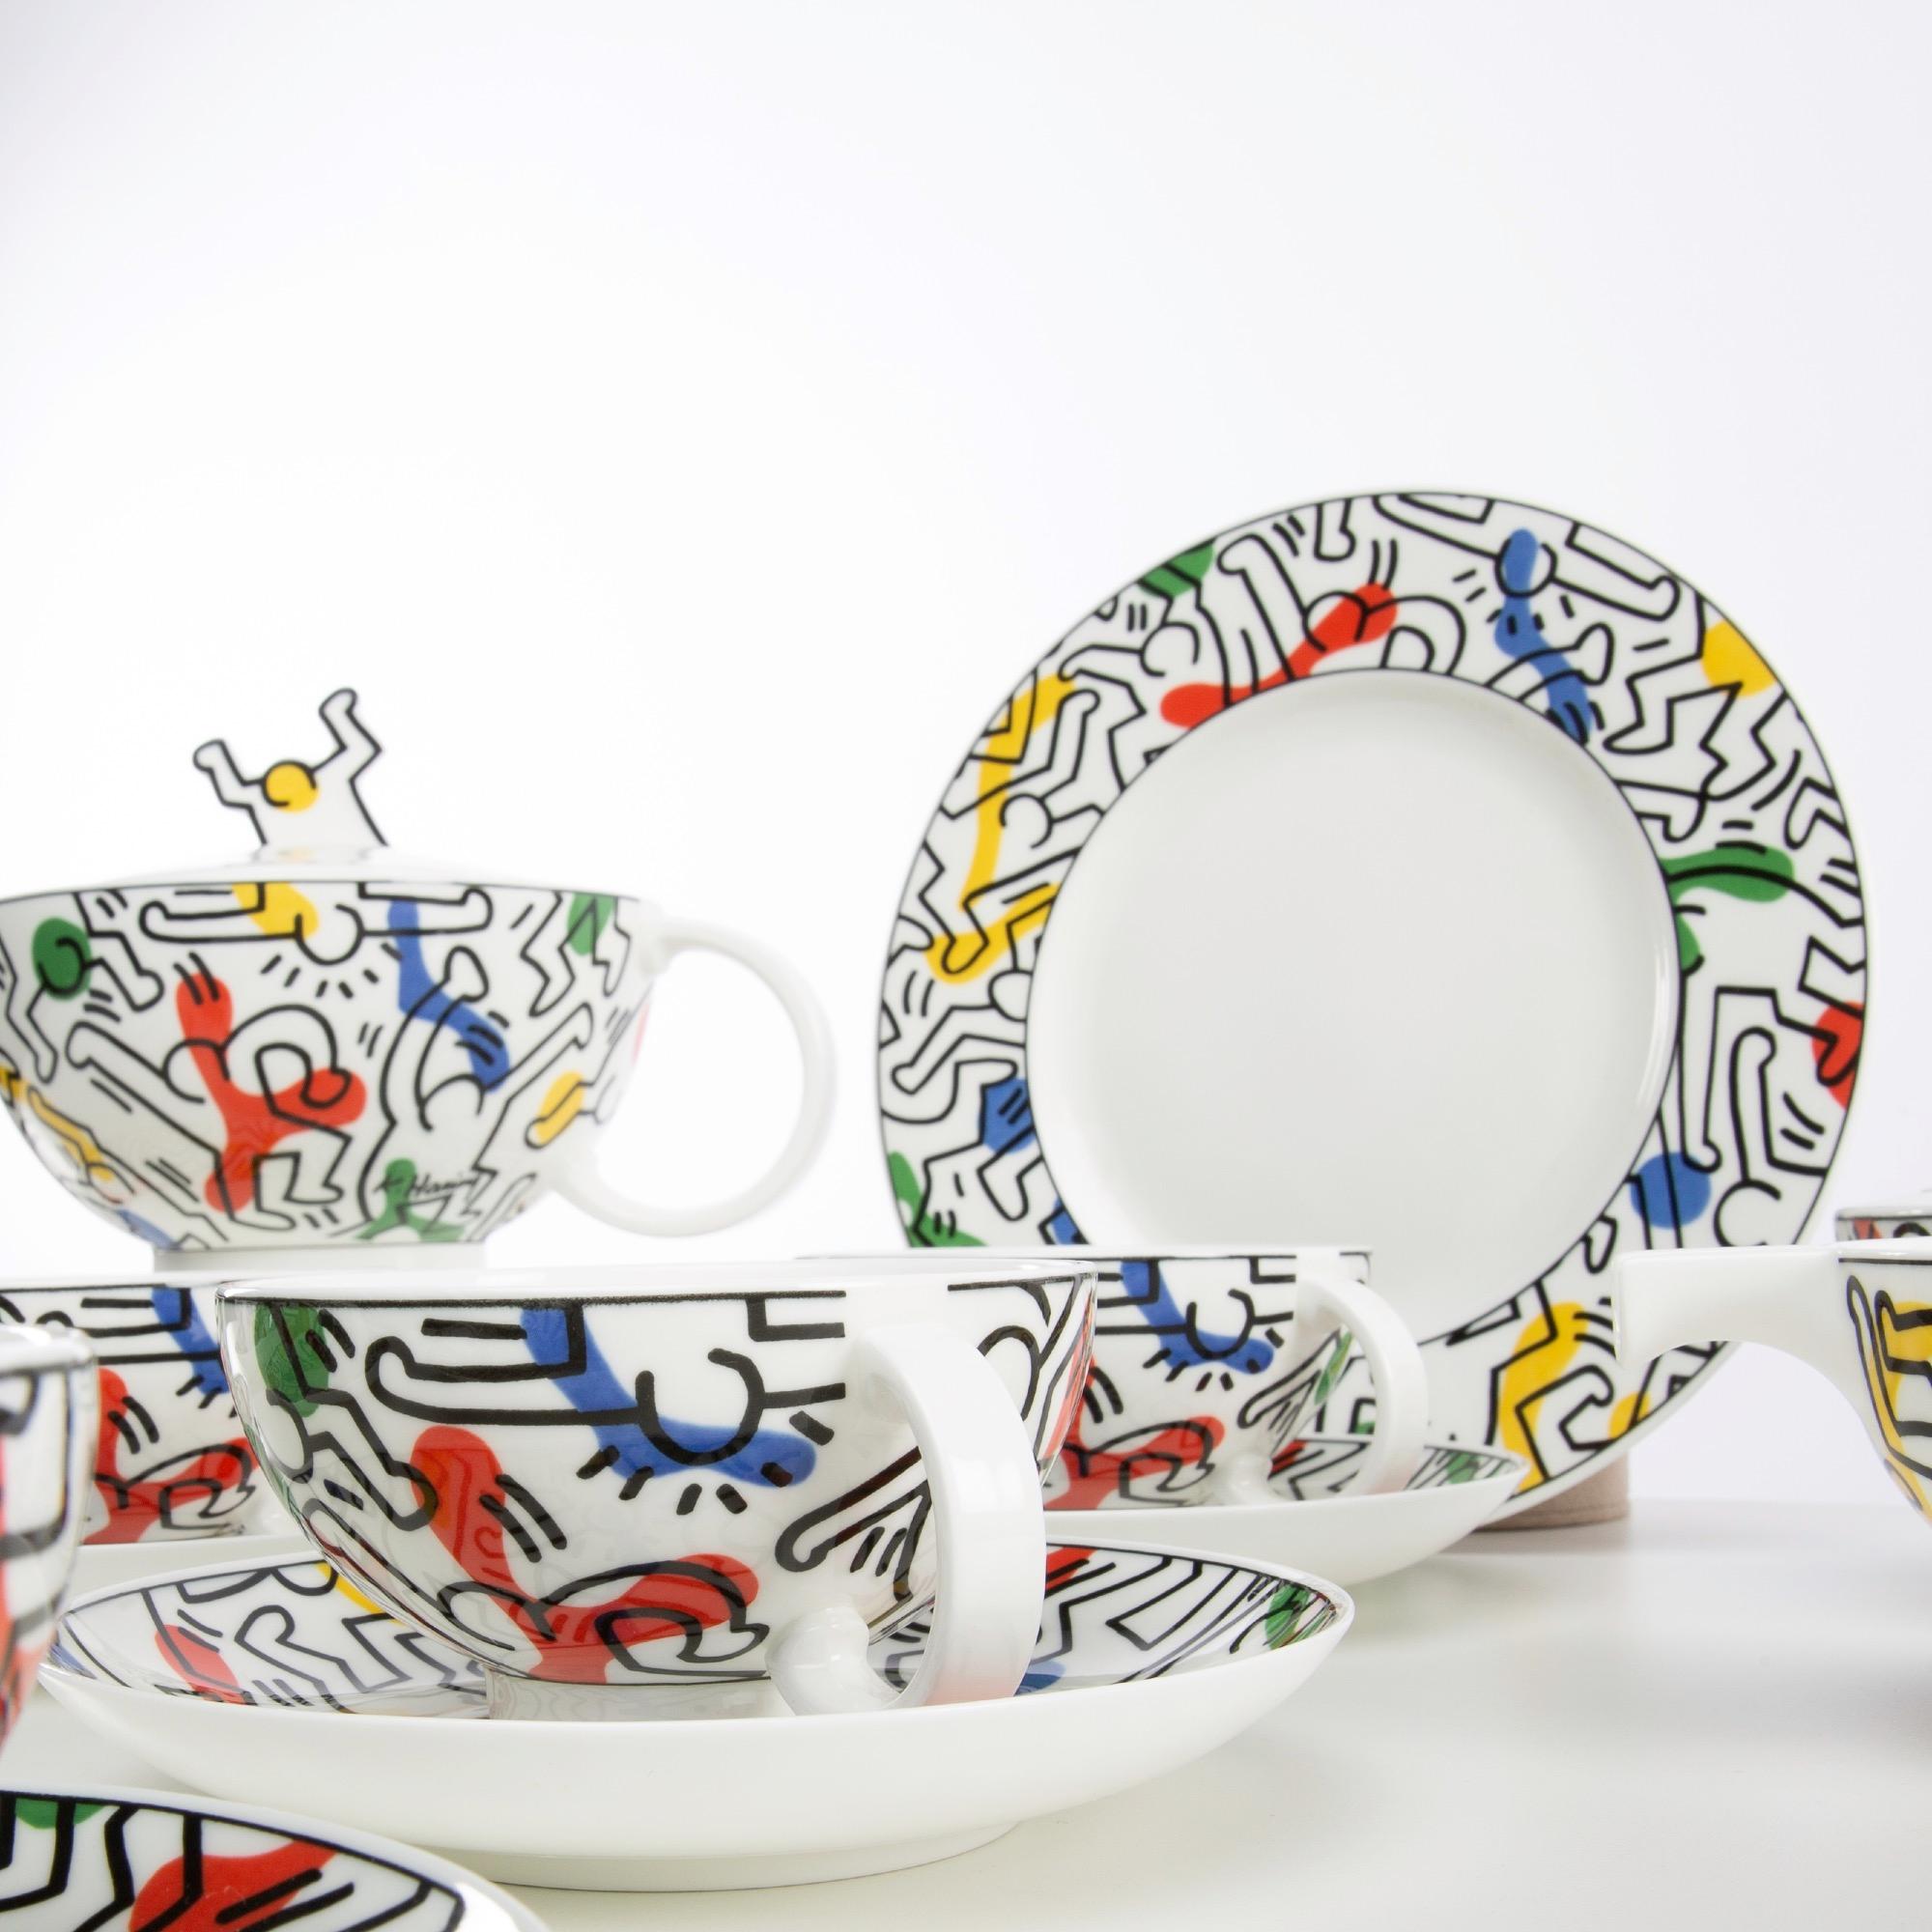 Teeservice aus Porzellan von Villeroy & Boch, verziert mit Zeichnungen von Keith Haring, hergestellt im Jahr 1991.
Limitiert auf 500 Exemplare
Bitte beachten Sie, dass die große Servierplatte und das Zertifikat fehlen.
Maße: 1x Milchkännchen